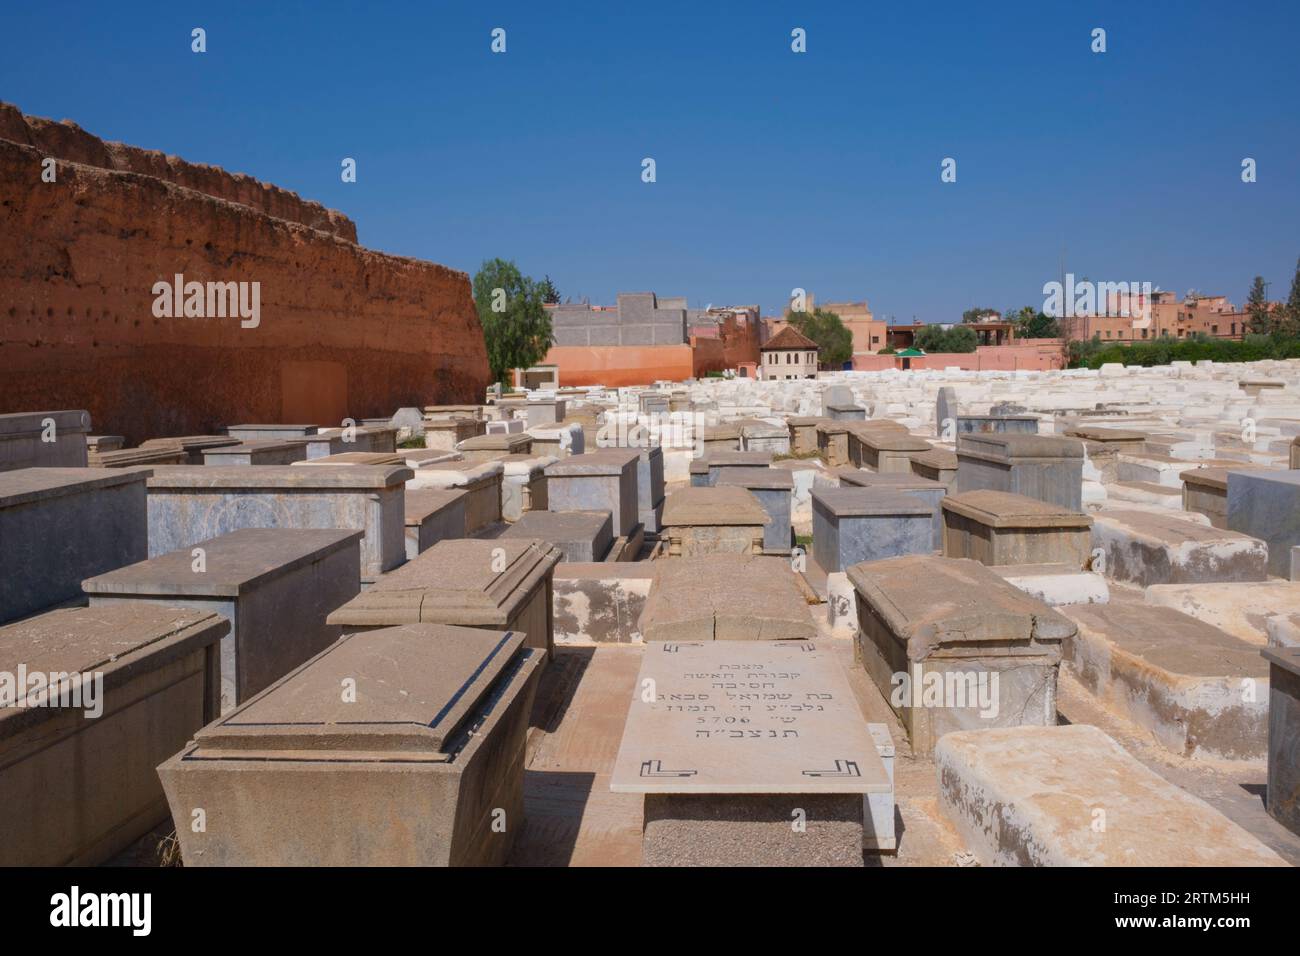 Marocco: Beth Mo'ed le'kol Chai o Cimitero ebraico di Marrakech (Cimitero di Miaara), Medina di Marrakech, Marrakech. Il cimitero di Miaara è il più grande cimitero ebraico del Marocco e risale al 1537 d.C. (5297 nel calendario ebraico), anche se si pensa che l'area sia stata utilizzata per le sepolture ebraiche fin dal XII secolo. Foto Stock